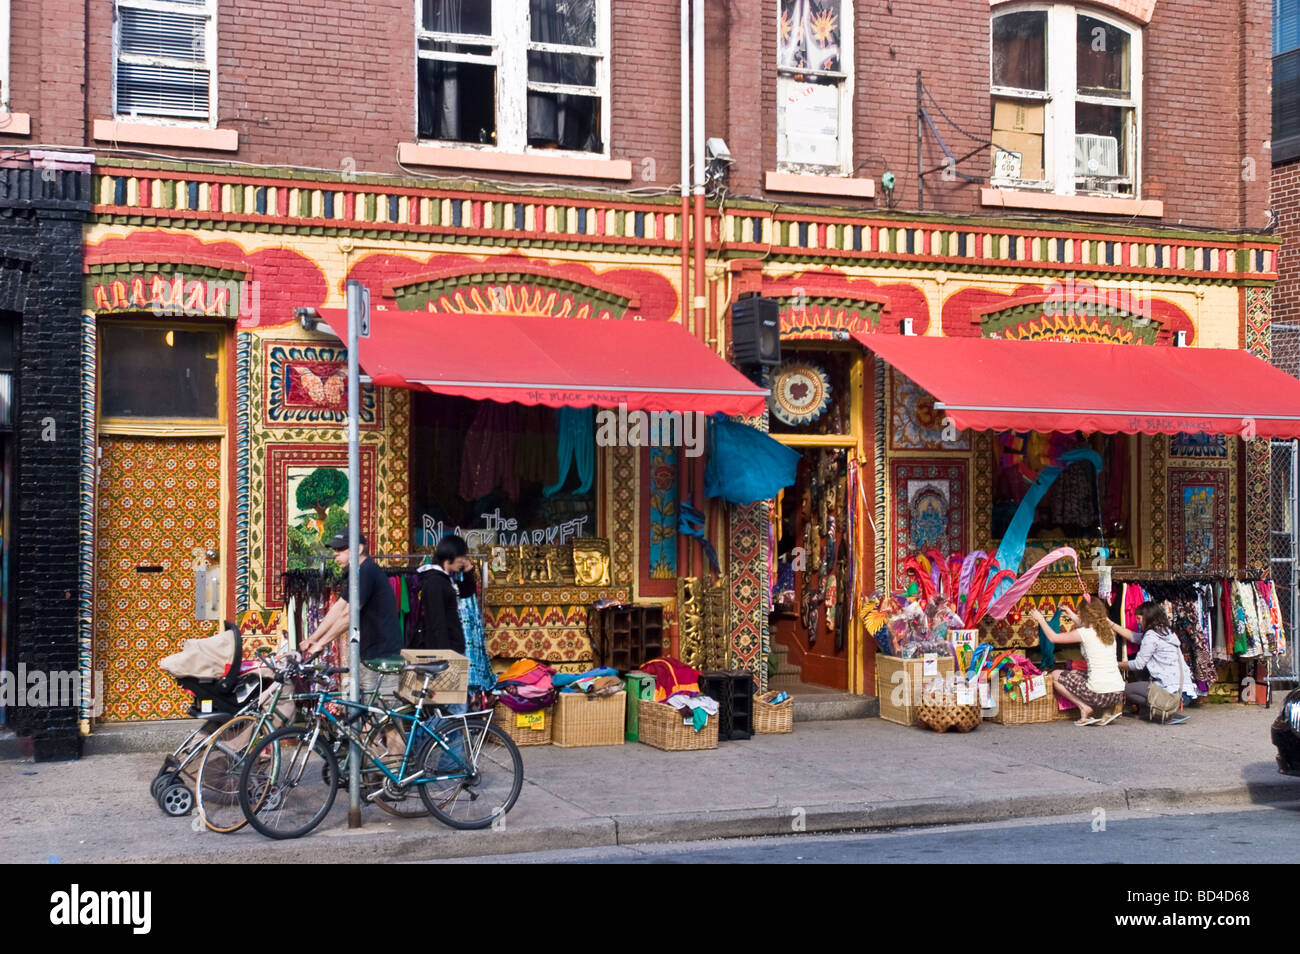 Fantaisie colorée boutique indienne à Halifax, Nouvelle-Écosse, Canada Banque D'Images